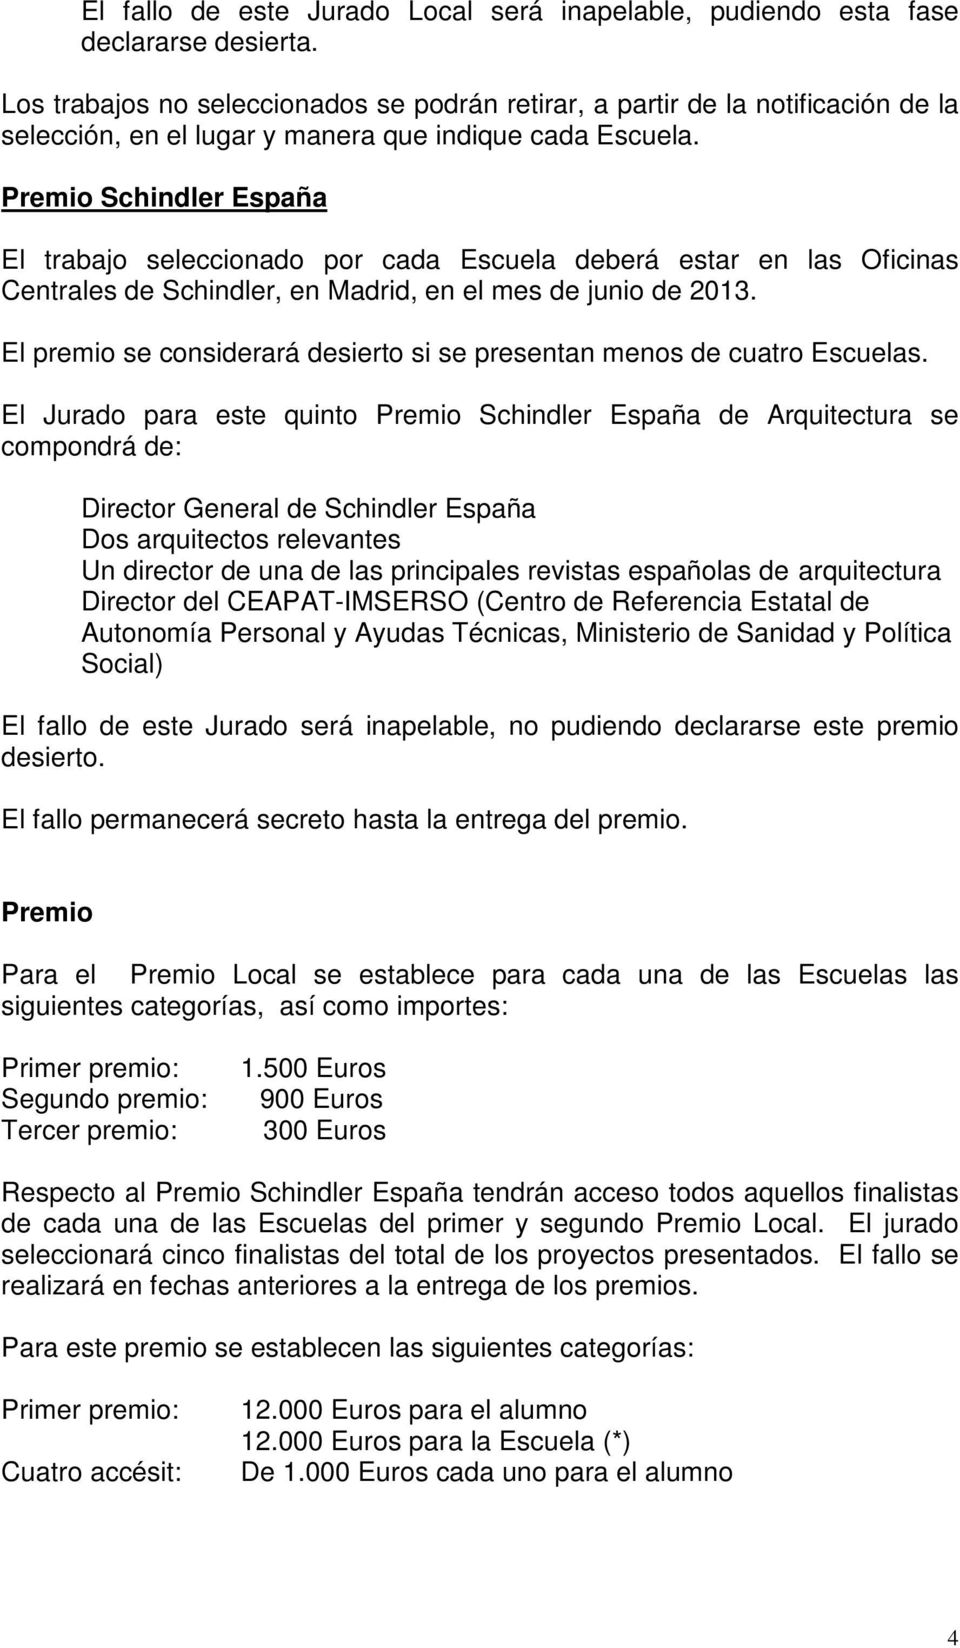 Premio Schindler España El trabajo seleccionado por cada Escuela deberá estar en las Oficinas Centrales de Schindler, en Madrid, en el mes de junio de 2013.